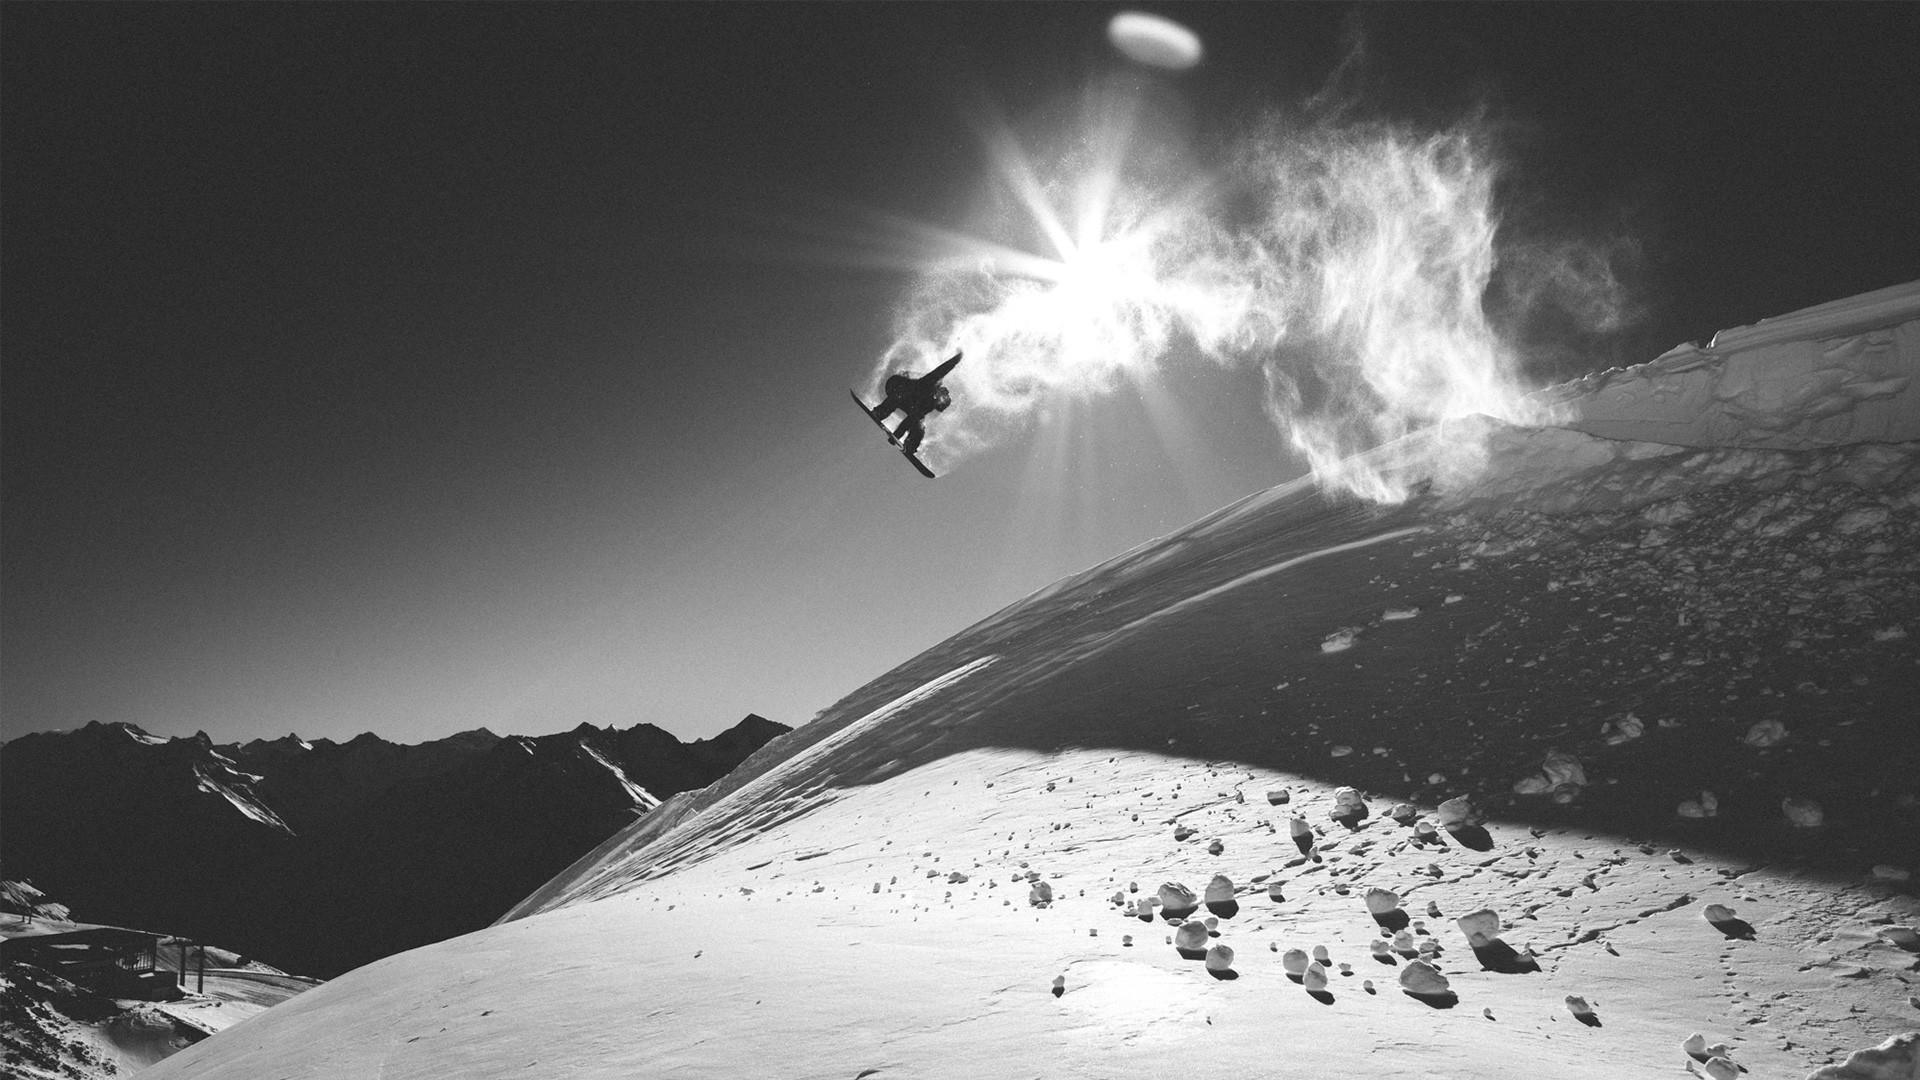 fond d'écran de snowboard,neige,snowboard,ski acrobatique,sport extrême,planche a neige